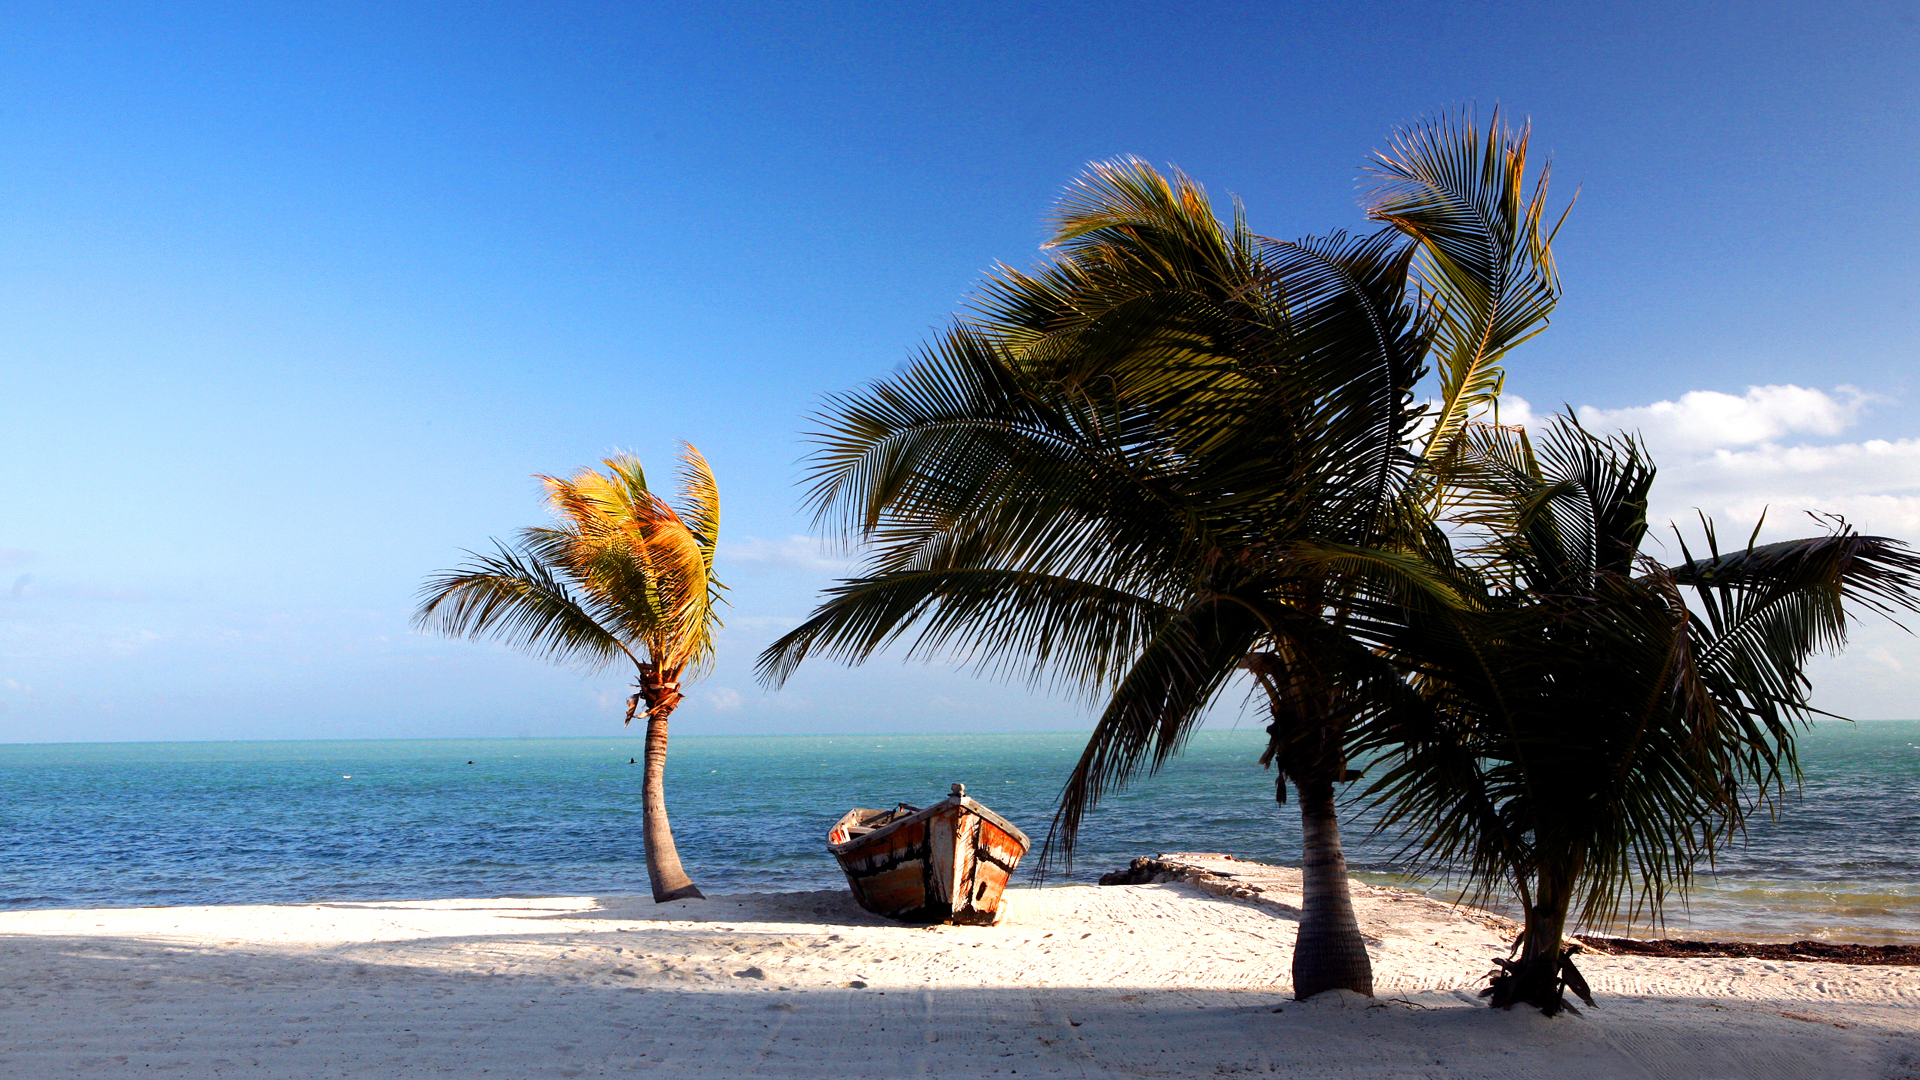 Florida Keys Beach